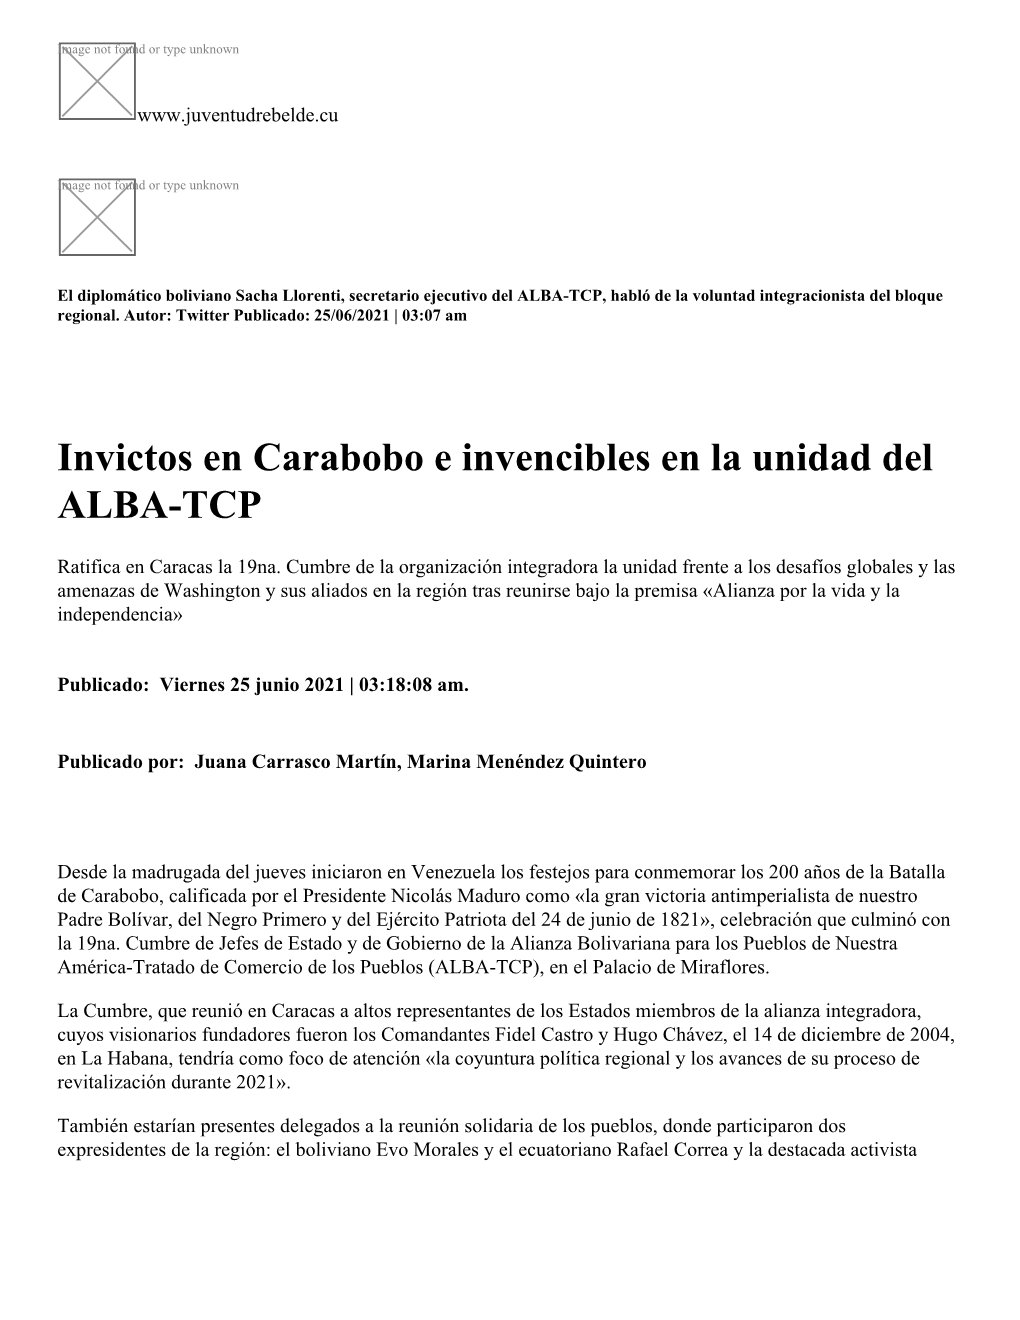 Invictos En Carabobo E Invencibles En La Unidad Del ALBA-TCP